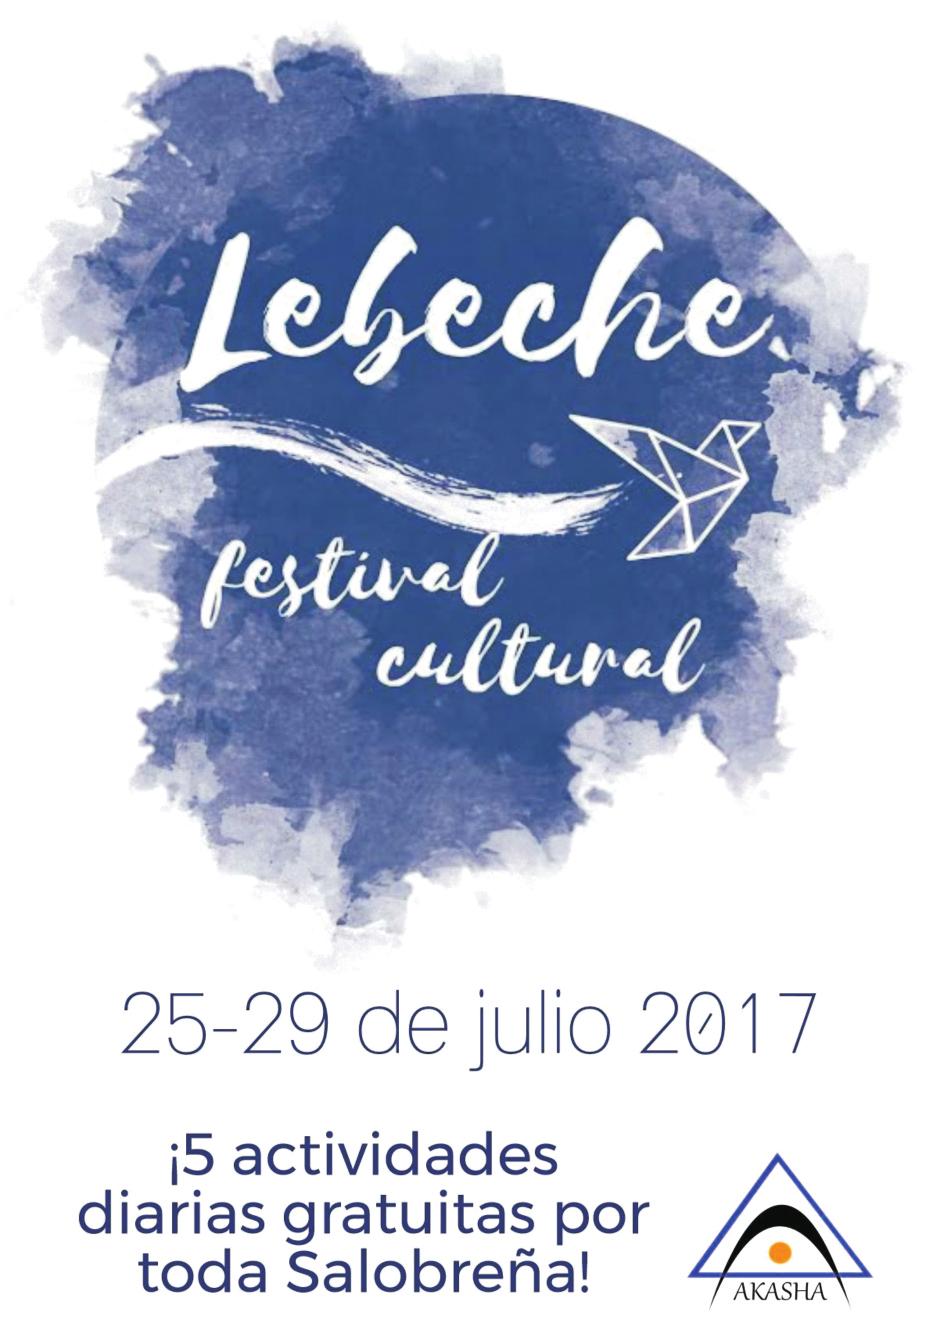 DEL MARTES, DÍA 25 AL SÁBADO, DÍA 29: FESTIVAL CULTURAL LEBECHE La segunda edición de uno de los festivales más prometedores llega este julio a Salobreña, 5 actividades diarias divididas en mañana,